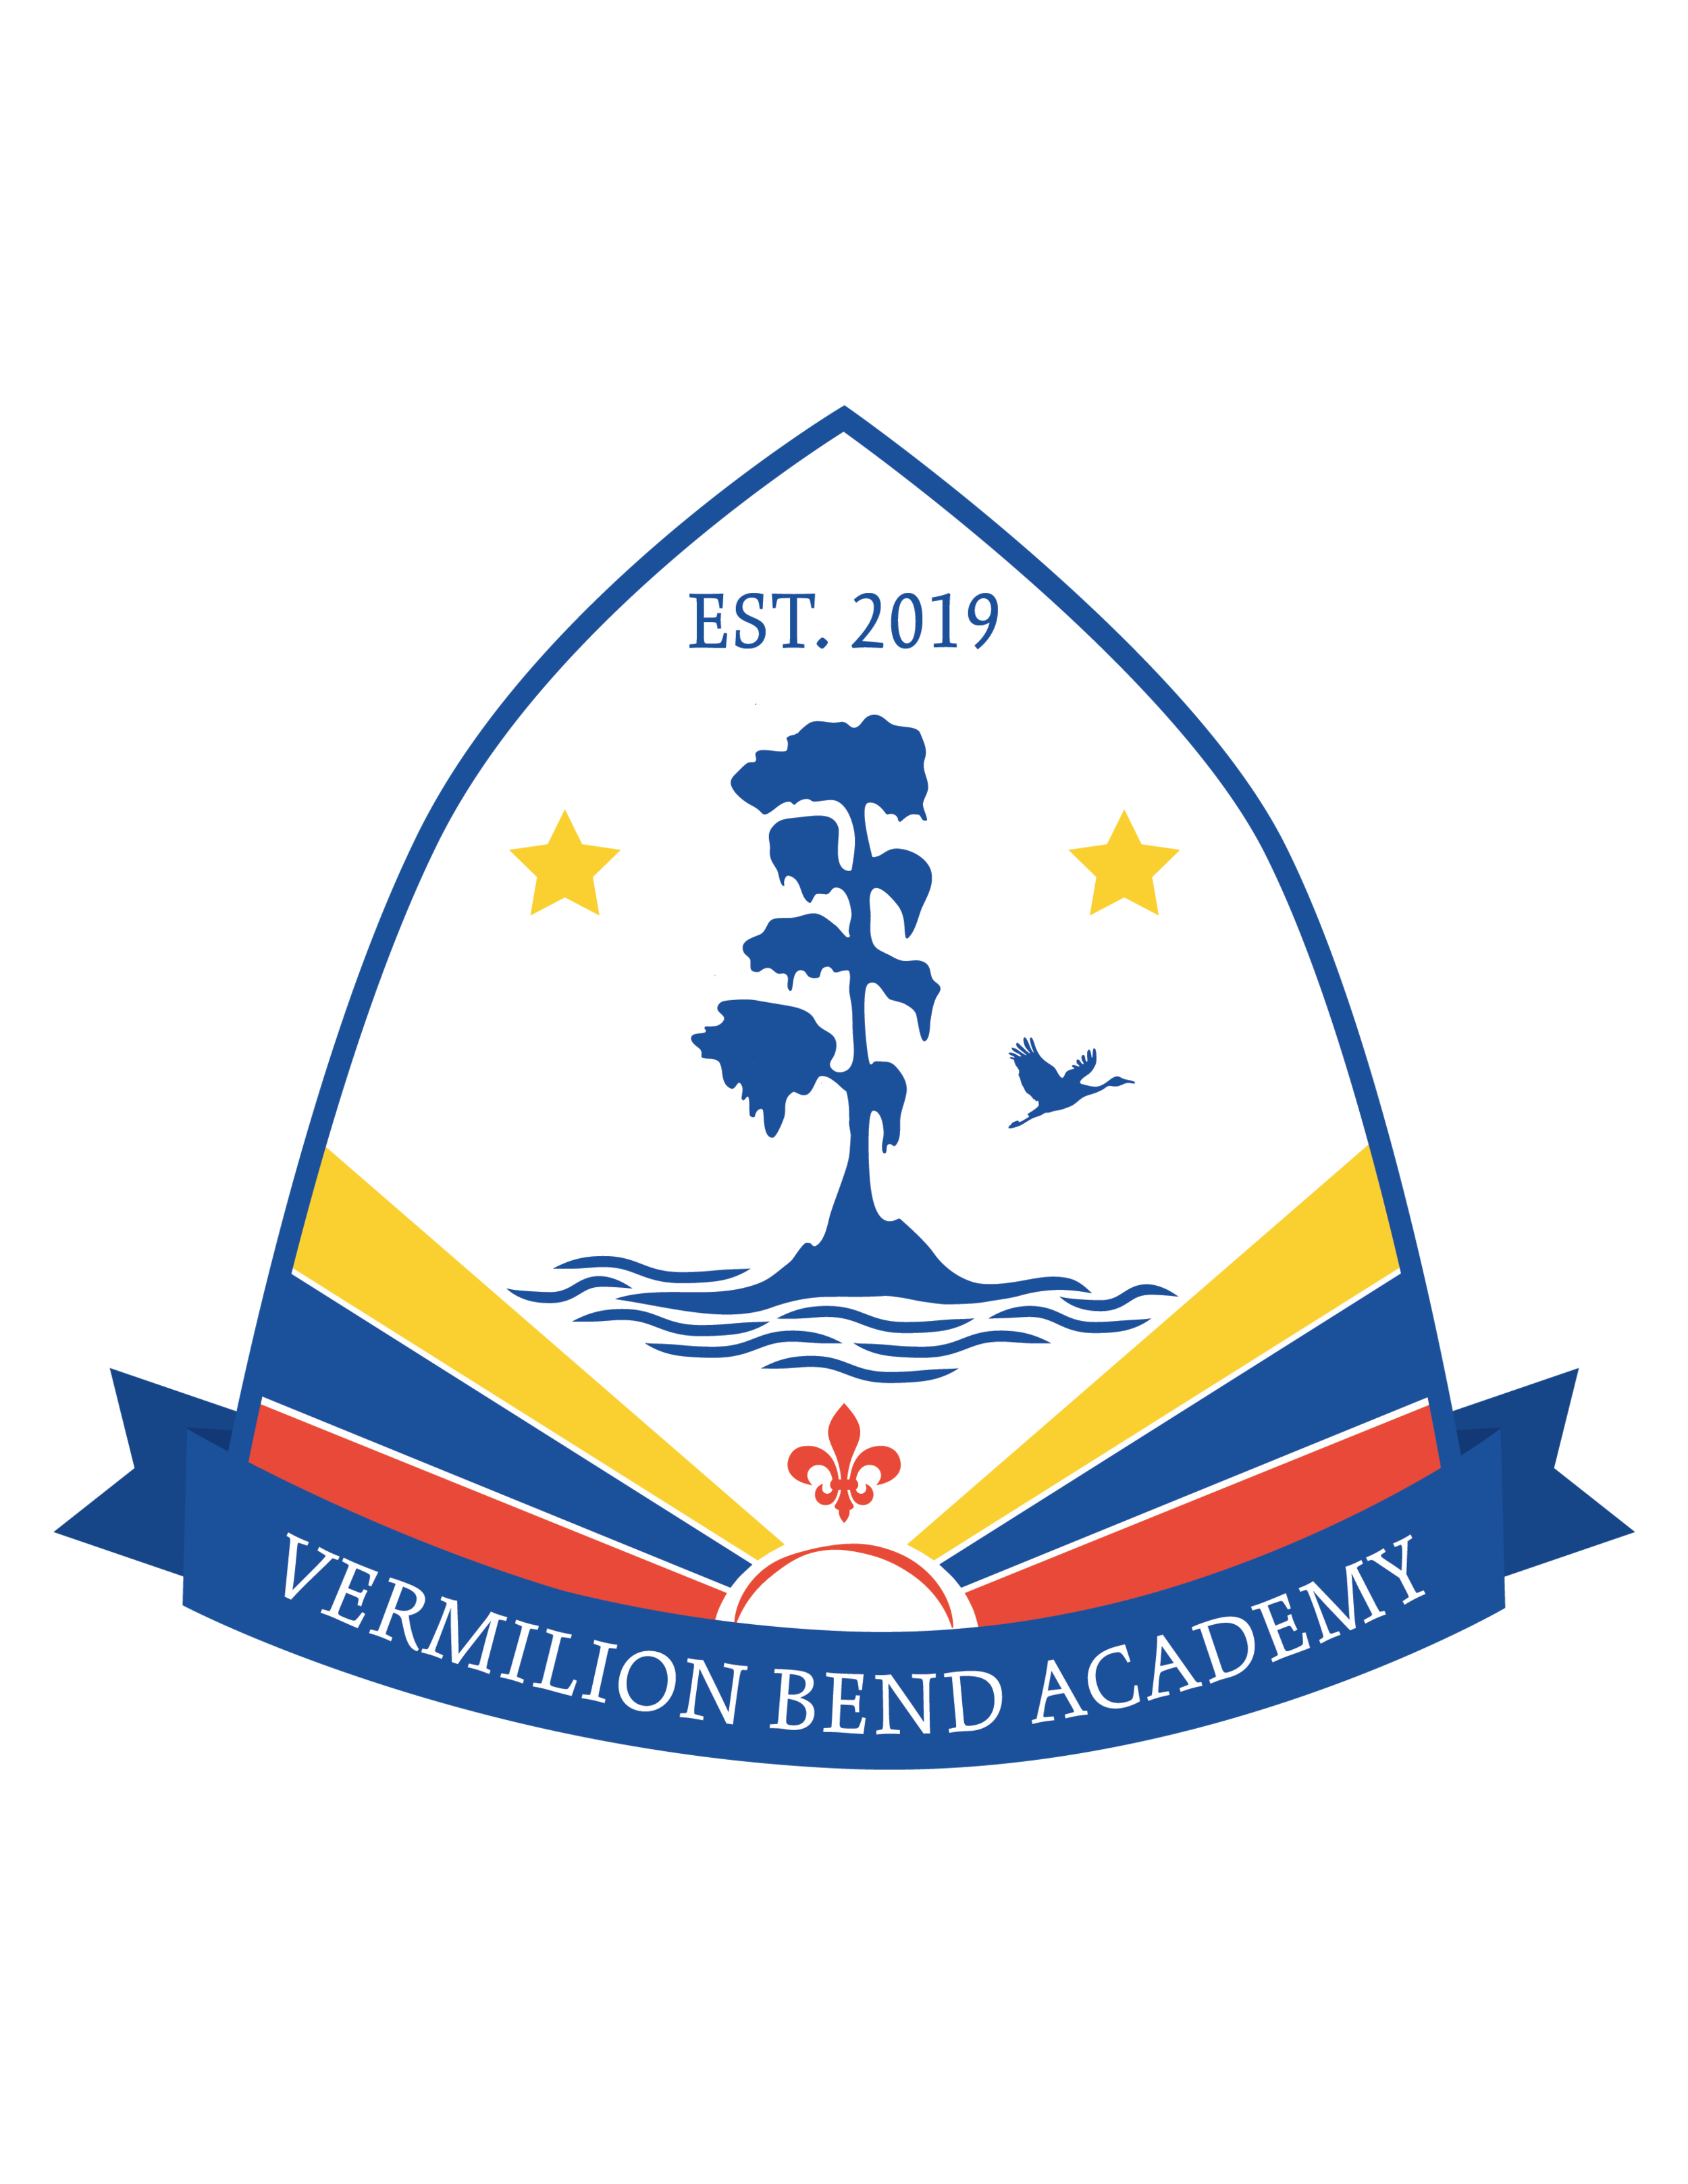 Vermilion Bend Academy